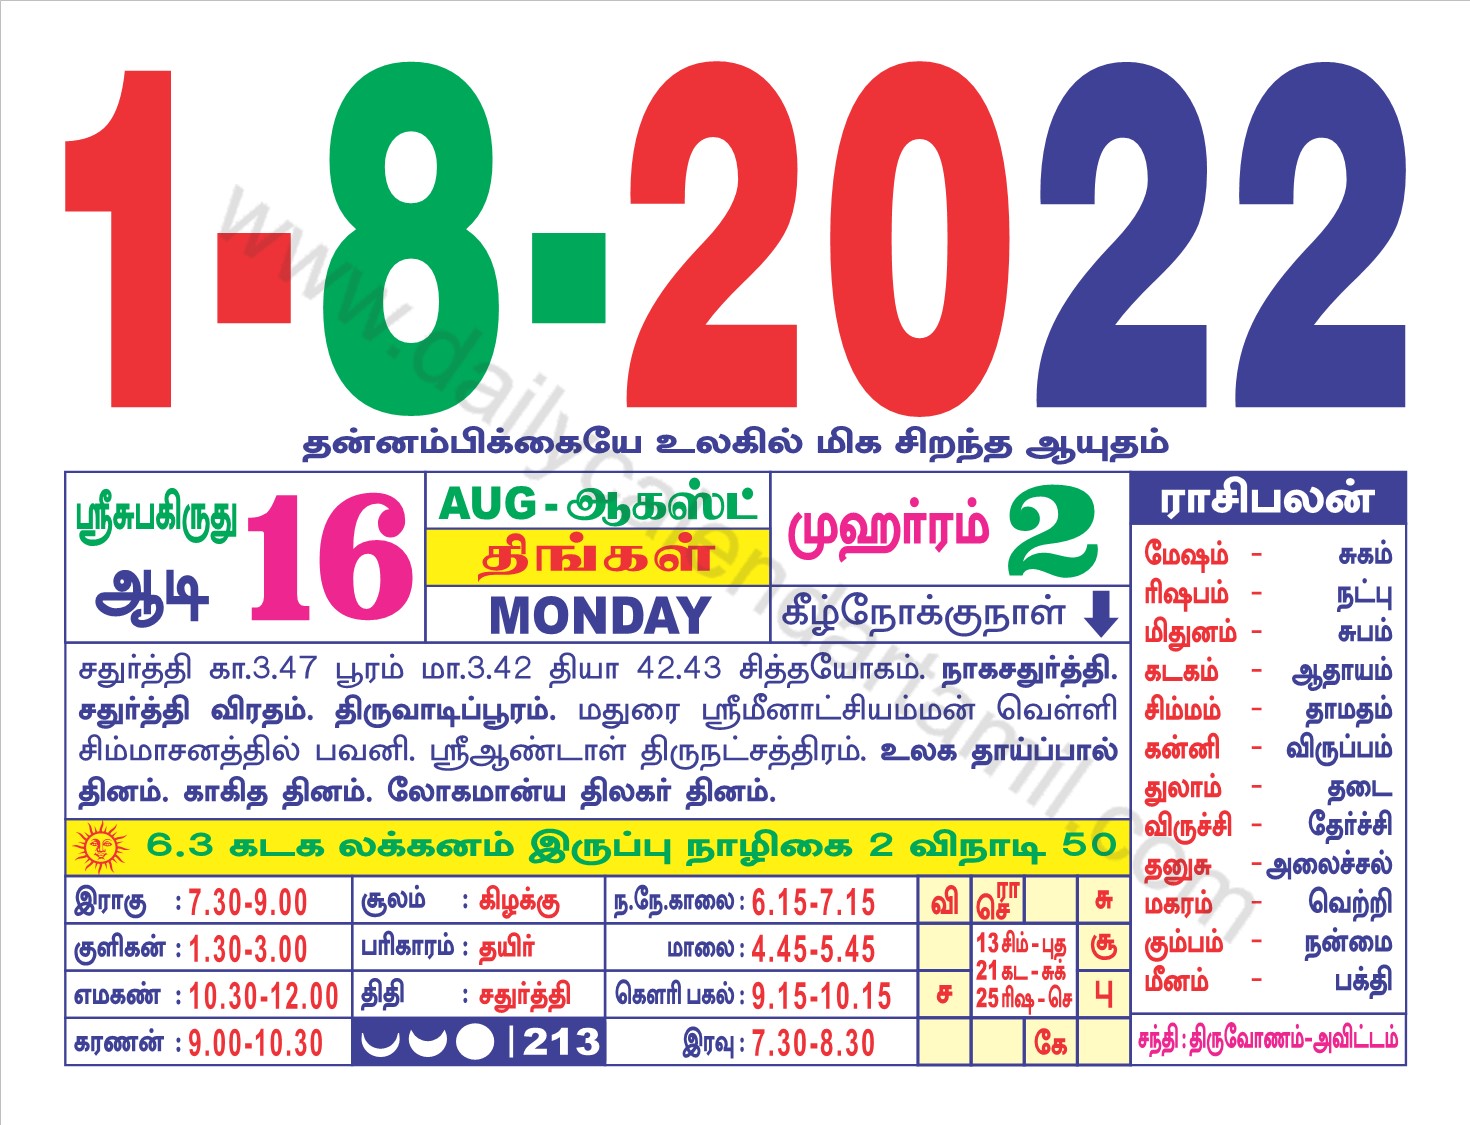 Tamil Daily Calendar 2022 August Tamil Calendar August 2022 | தமிழ் மாத காலண்டர் 2022